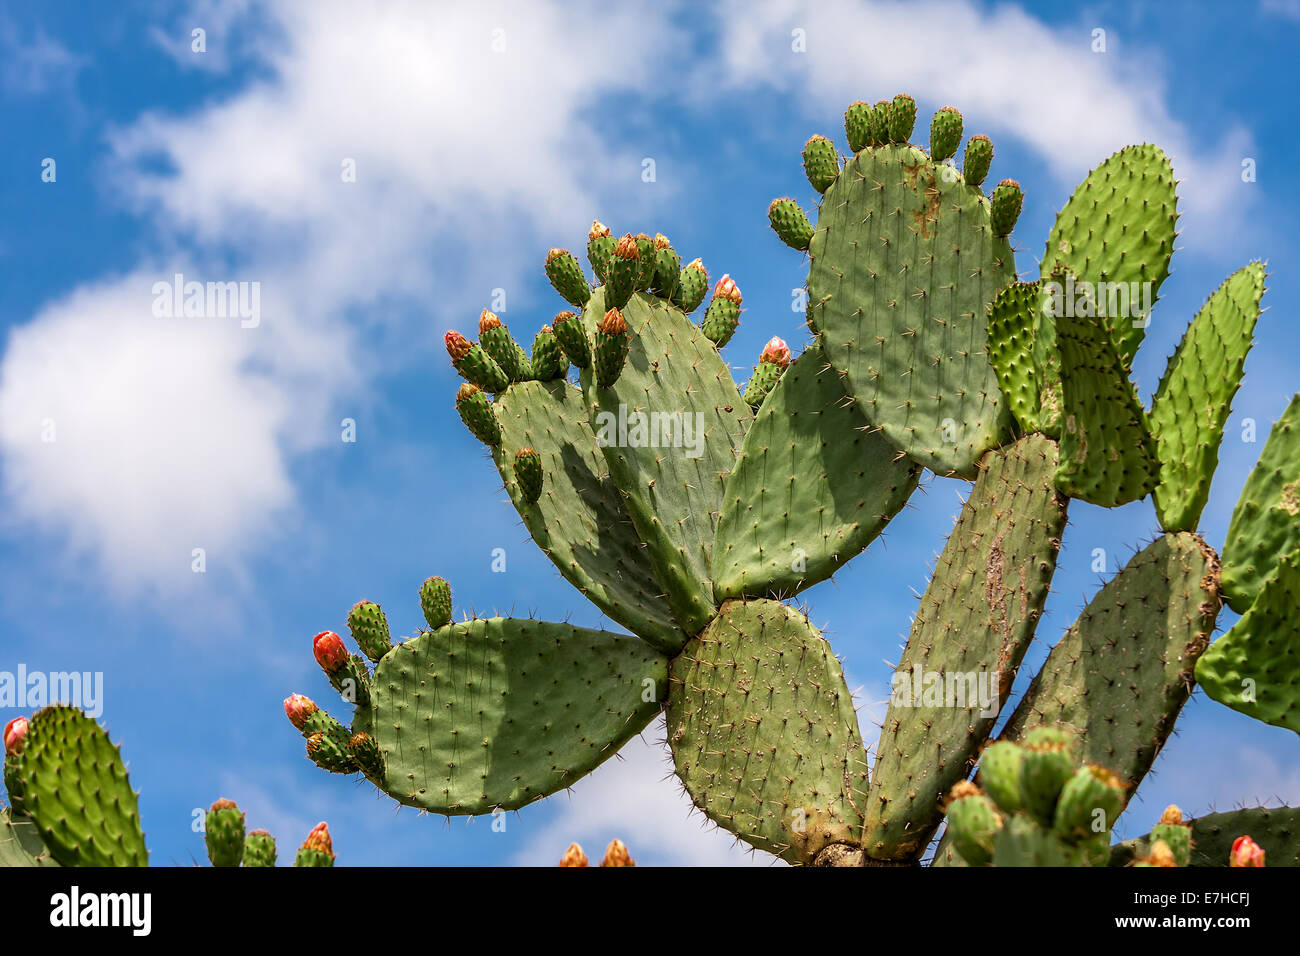 Grüne flache abgerundete Kladodien Opuntia Kaktus mit Knospen gegen blauen Himmel mit weißen Wolken in Israel. Stockfoto